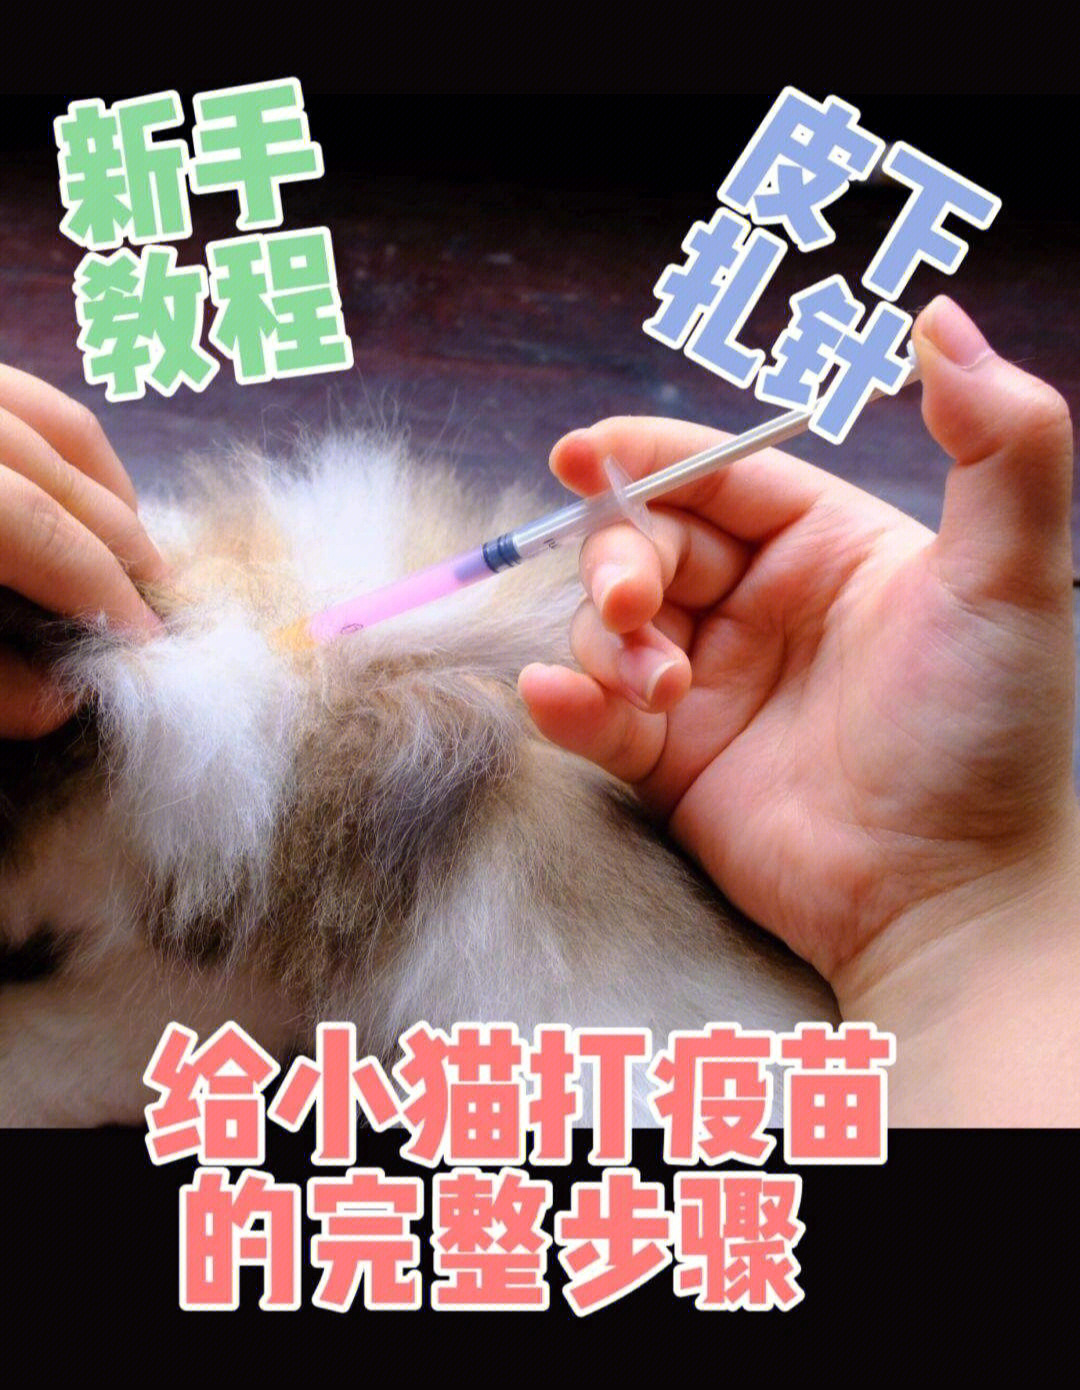 在对皮肤进行消毒时,还可以使猫的毛发分开,露出皮肤,方便进针